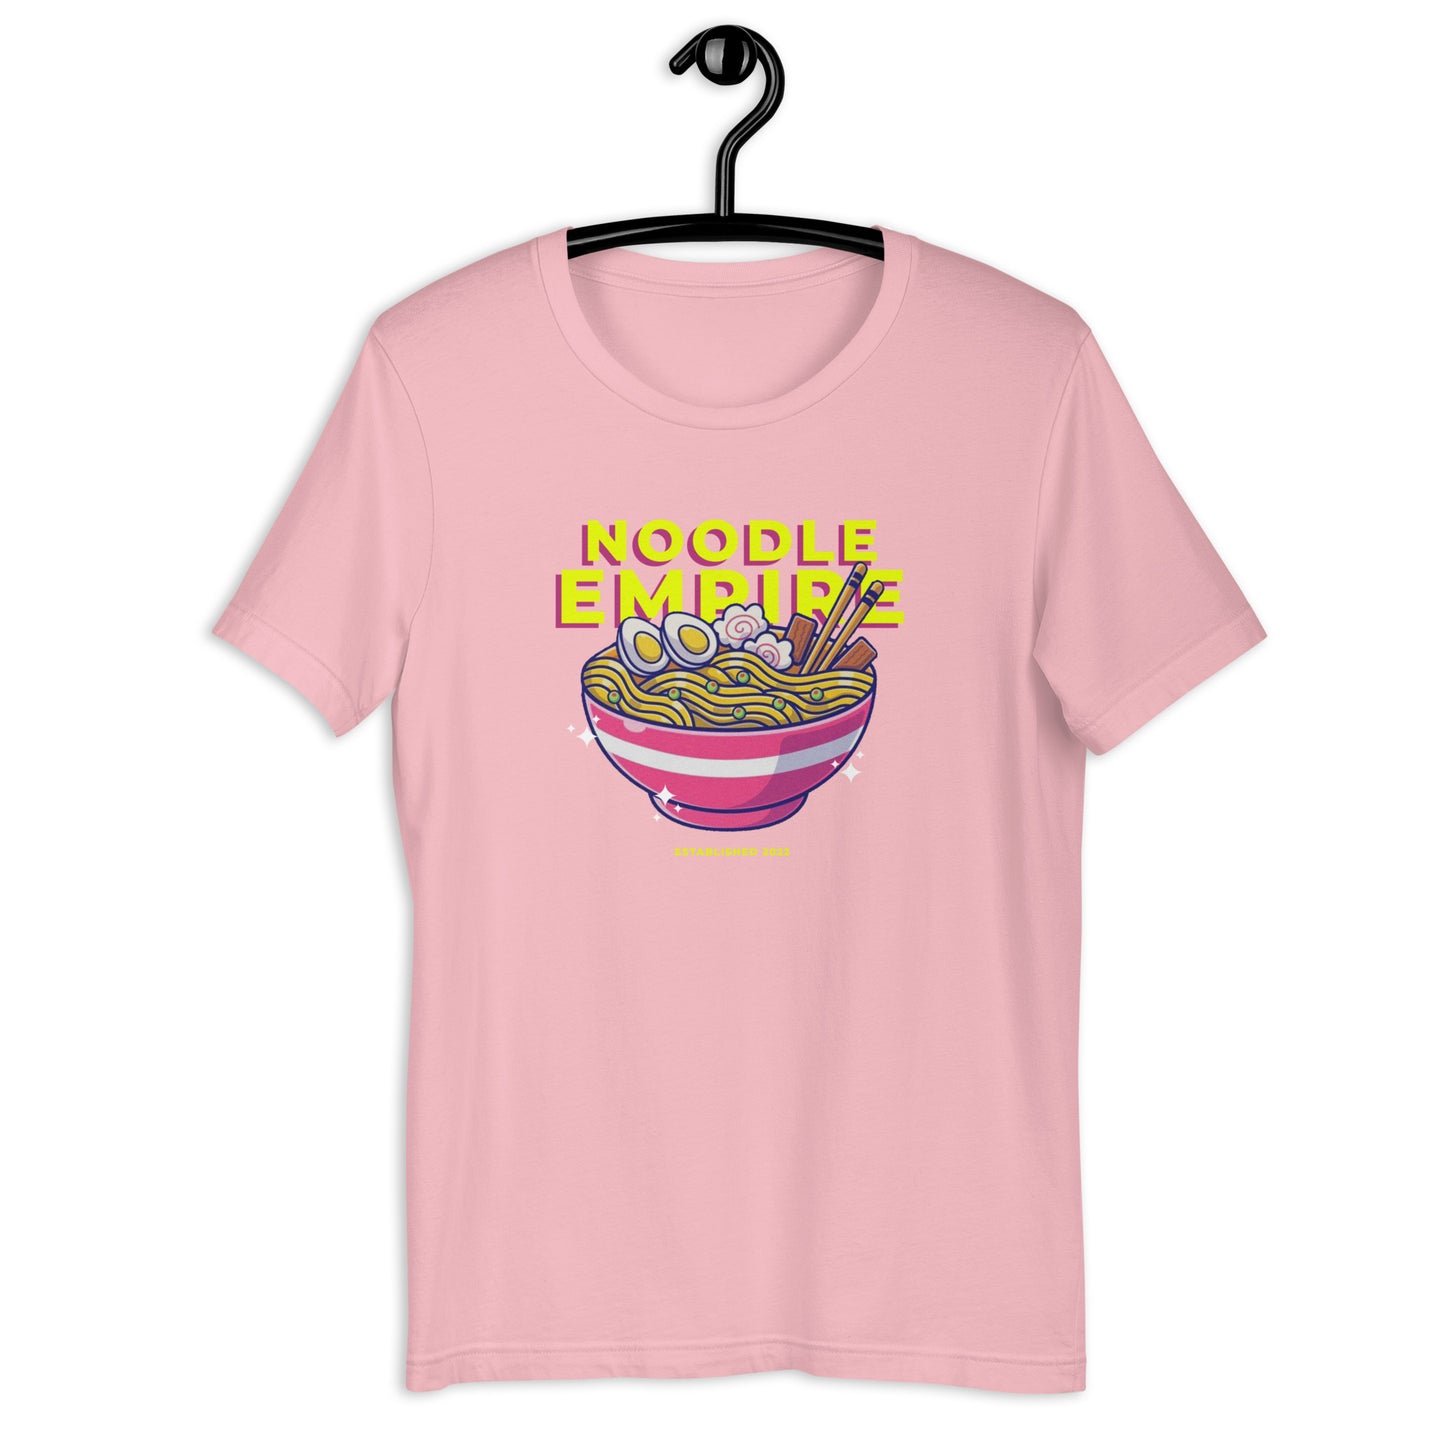 Noodle Empire T-Shirt: Pink Logo